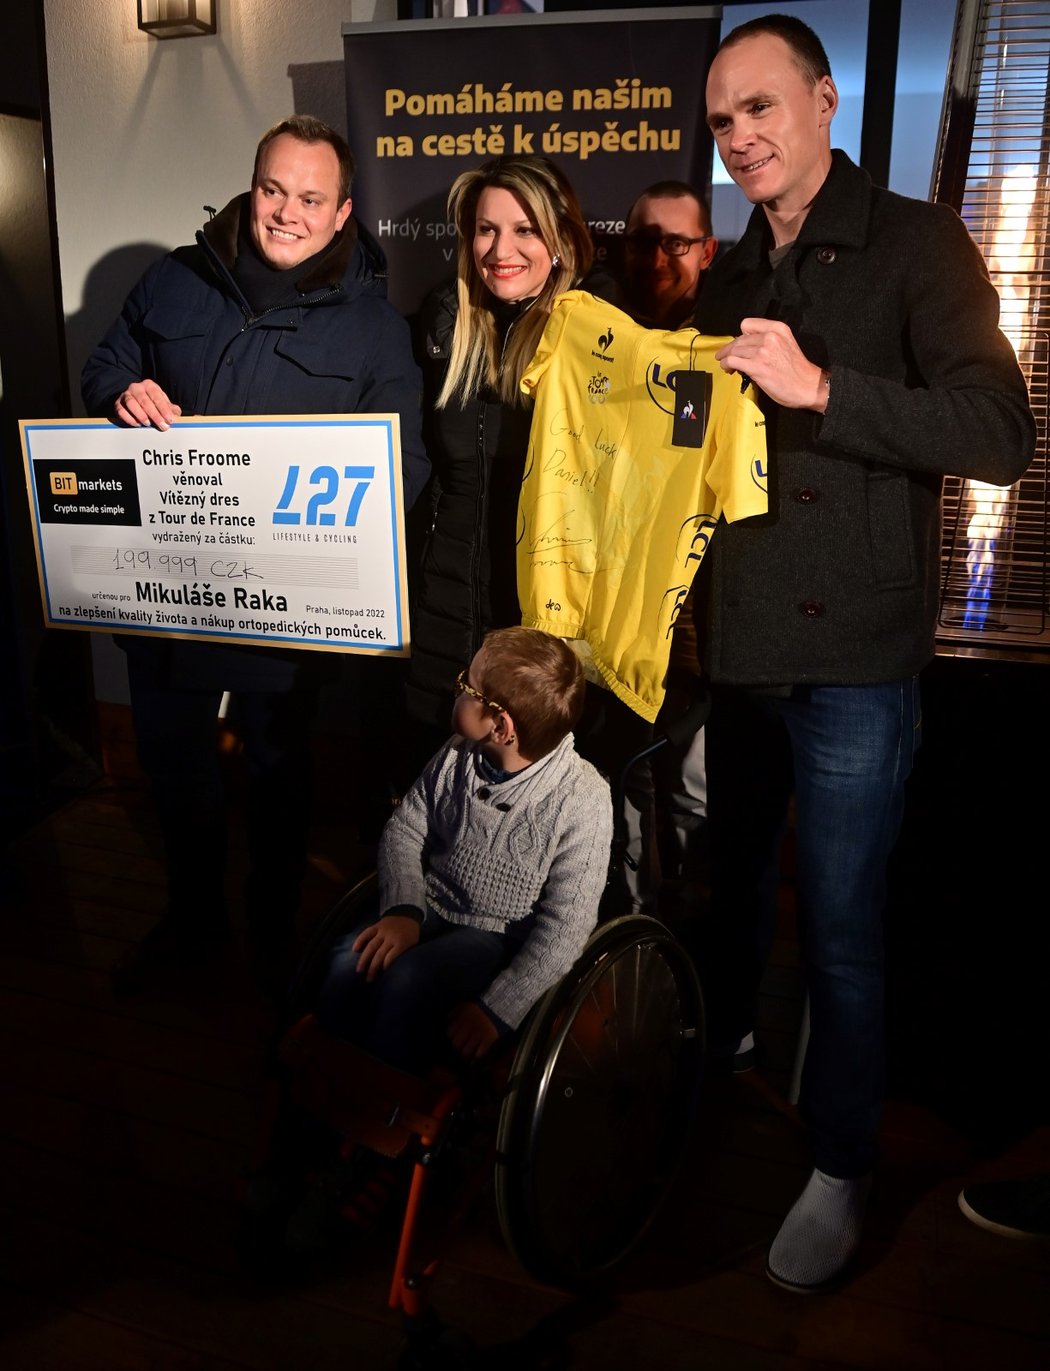 Když cyklistický šampion Chris Froome přijel poprvé do Prahy, vydražil žlutý dres z Tour 2013 pro syna svého českého kolegy